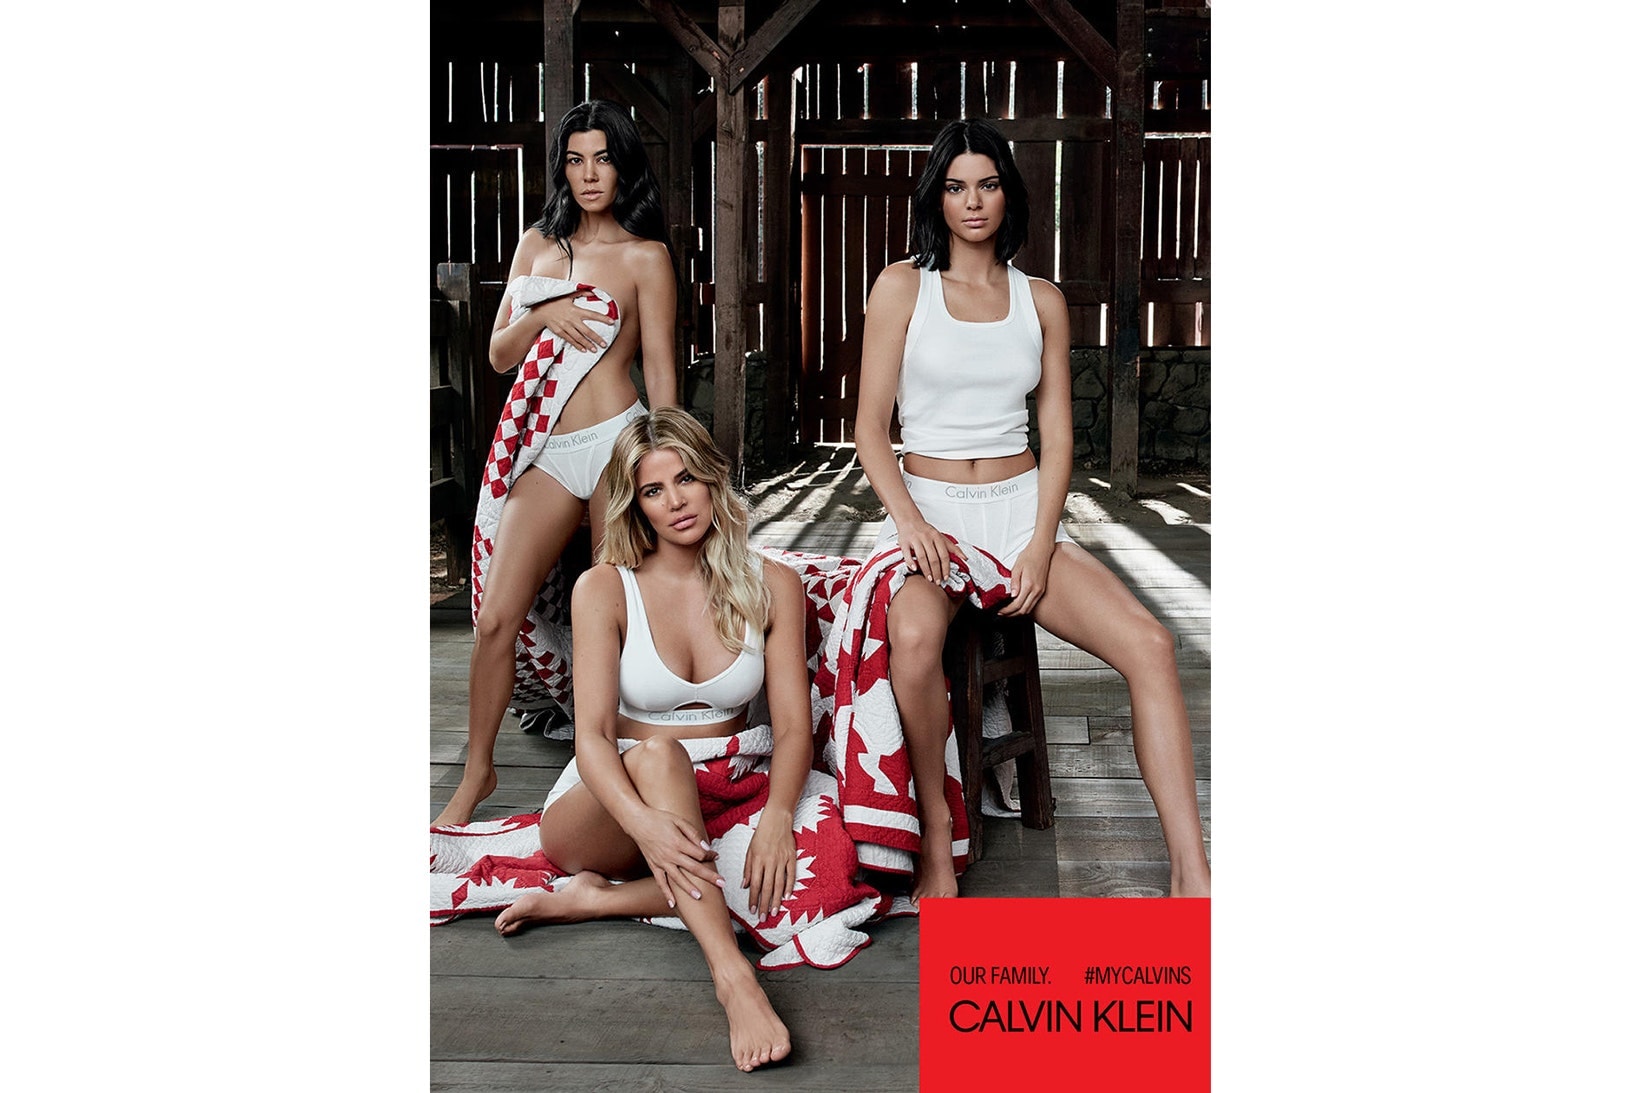 Kardashian-Jenner 五姐妹出鏡 Calvin Klein 最新宣傳大片